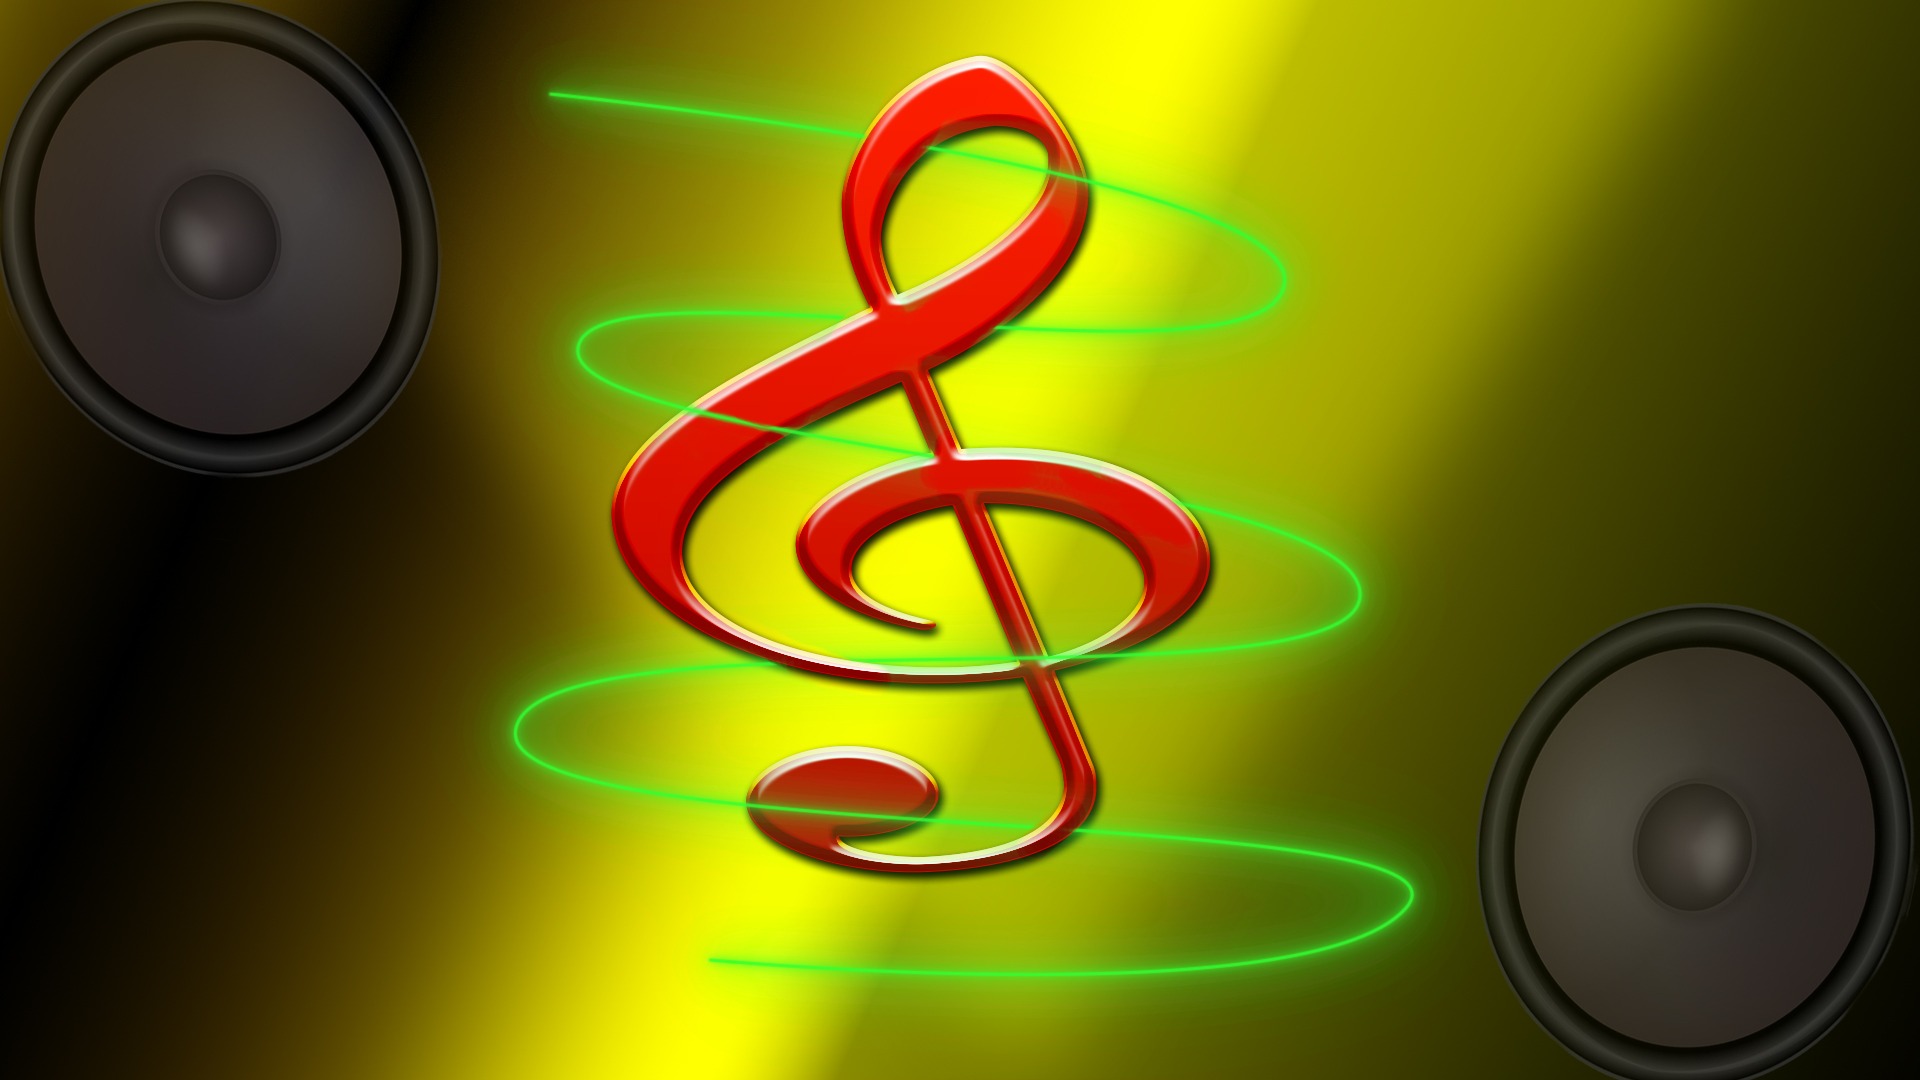 Pixabay music. Музыка. Разноцветные клавиши пианино. Песни для колонки. Музыкальные колонки для ноутбука картинки бесплатно.